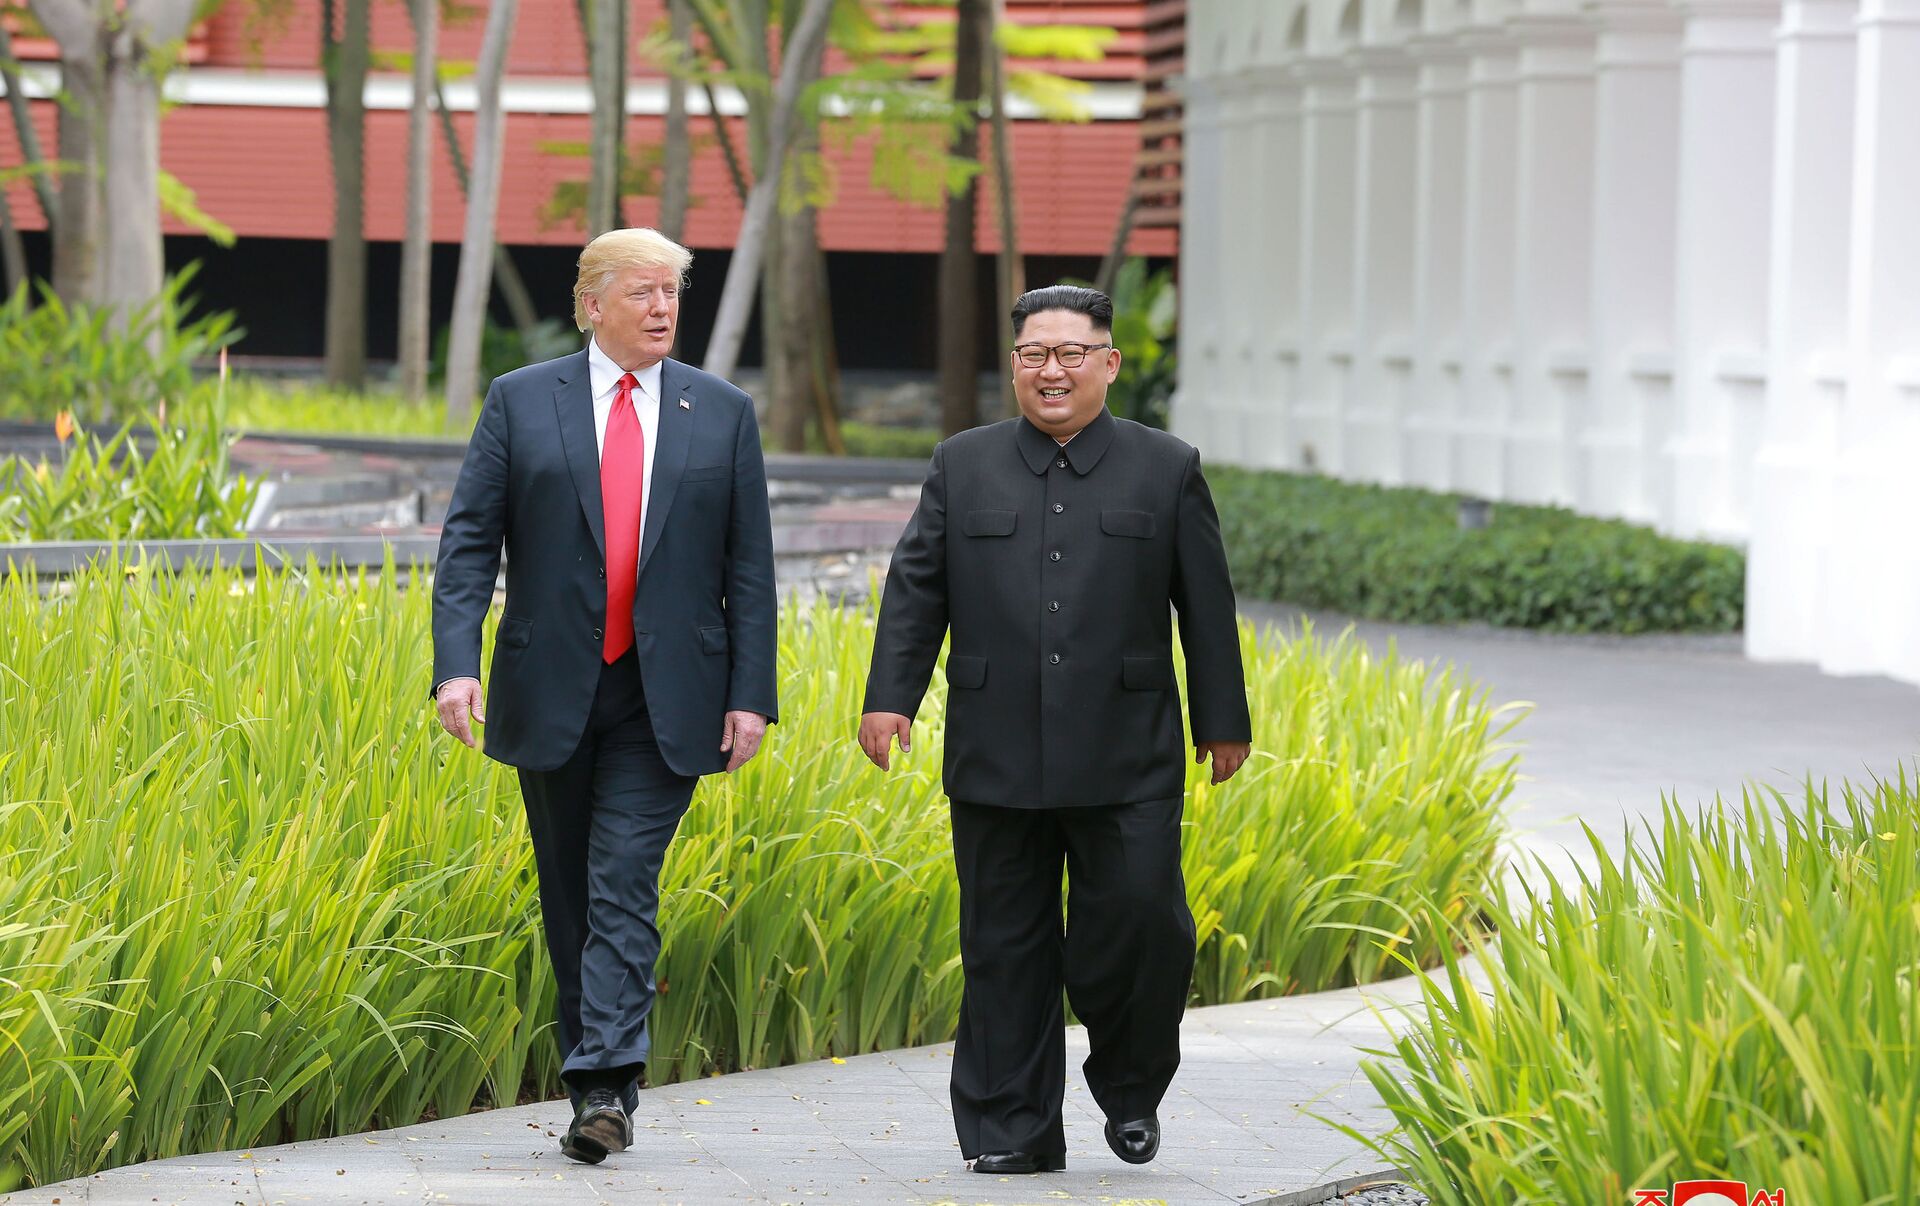 Kim Jong-un usó zapatos especiales en encuentro con Trump? - 13.06.2018, Sputnik Mundo